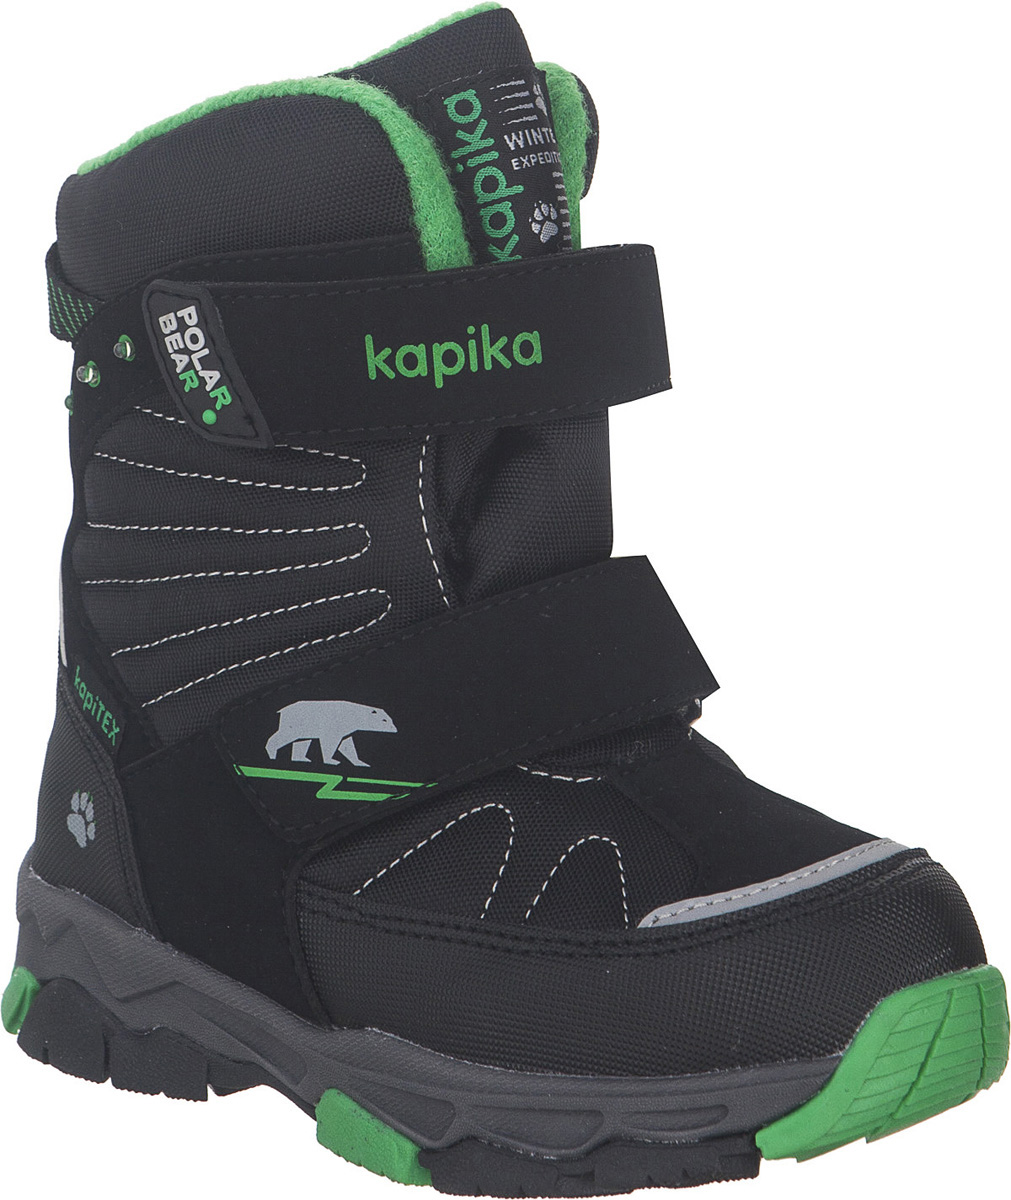 Ботинки для мальчика Kapika KapiTEX, цвет: черный, зеленый. 42235-1. Размер 30